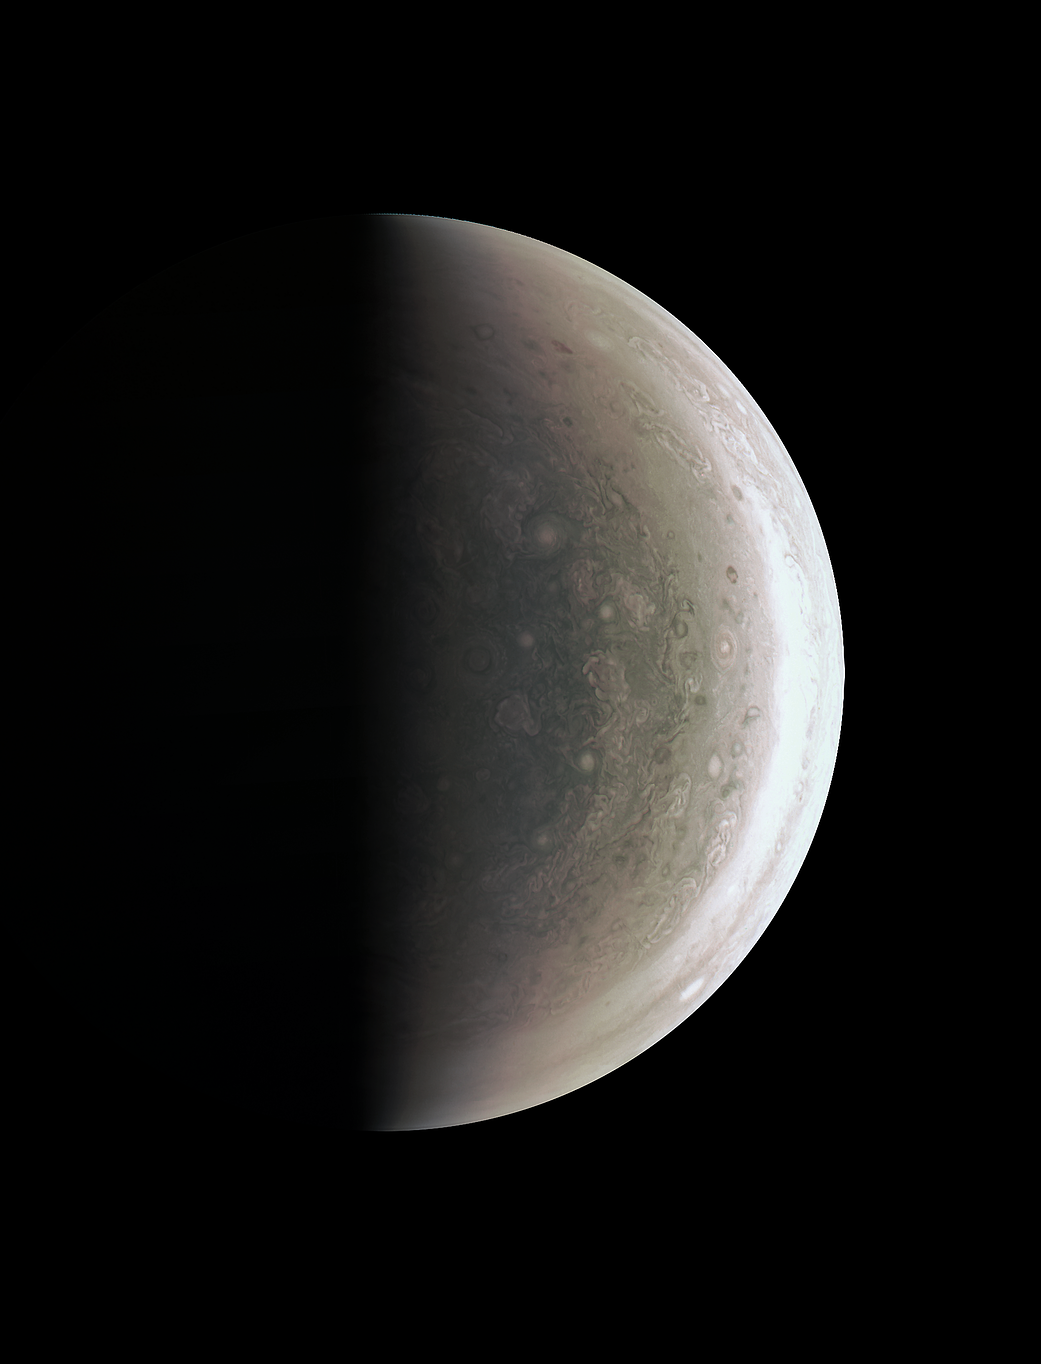 Jupiter's south polar region